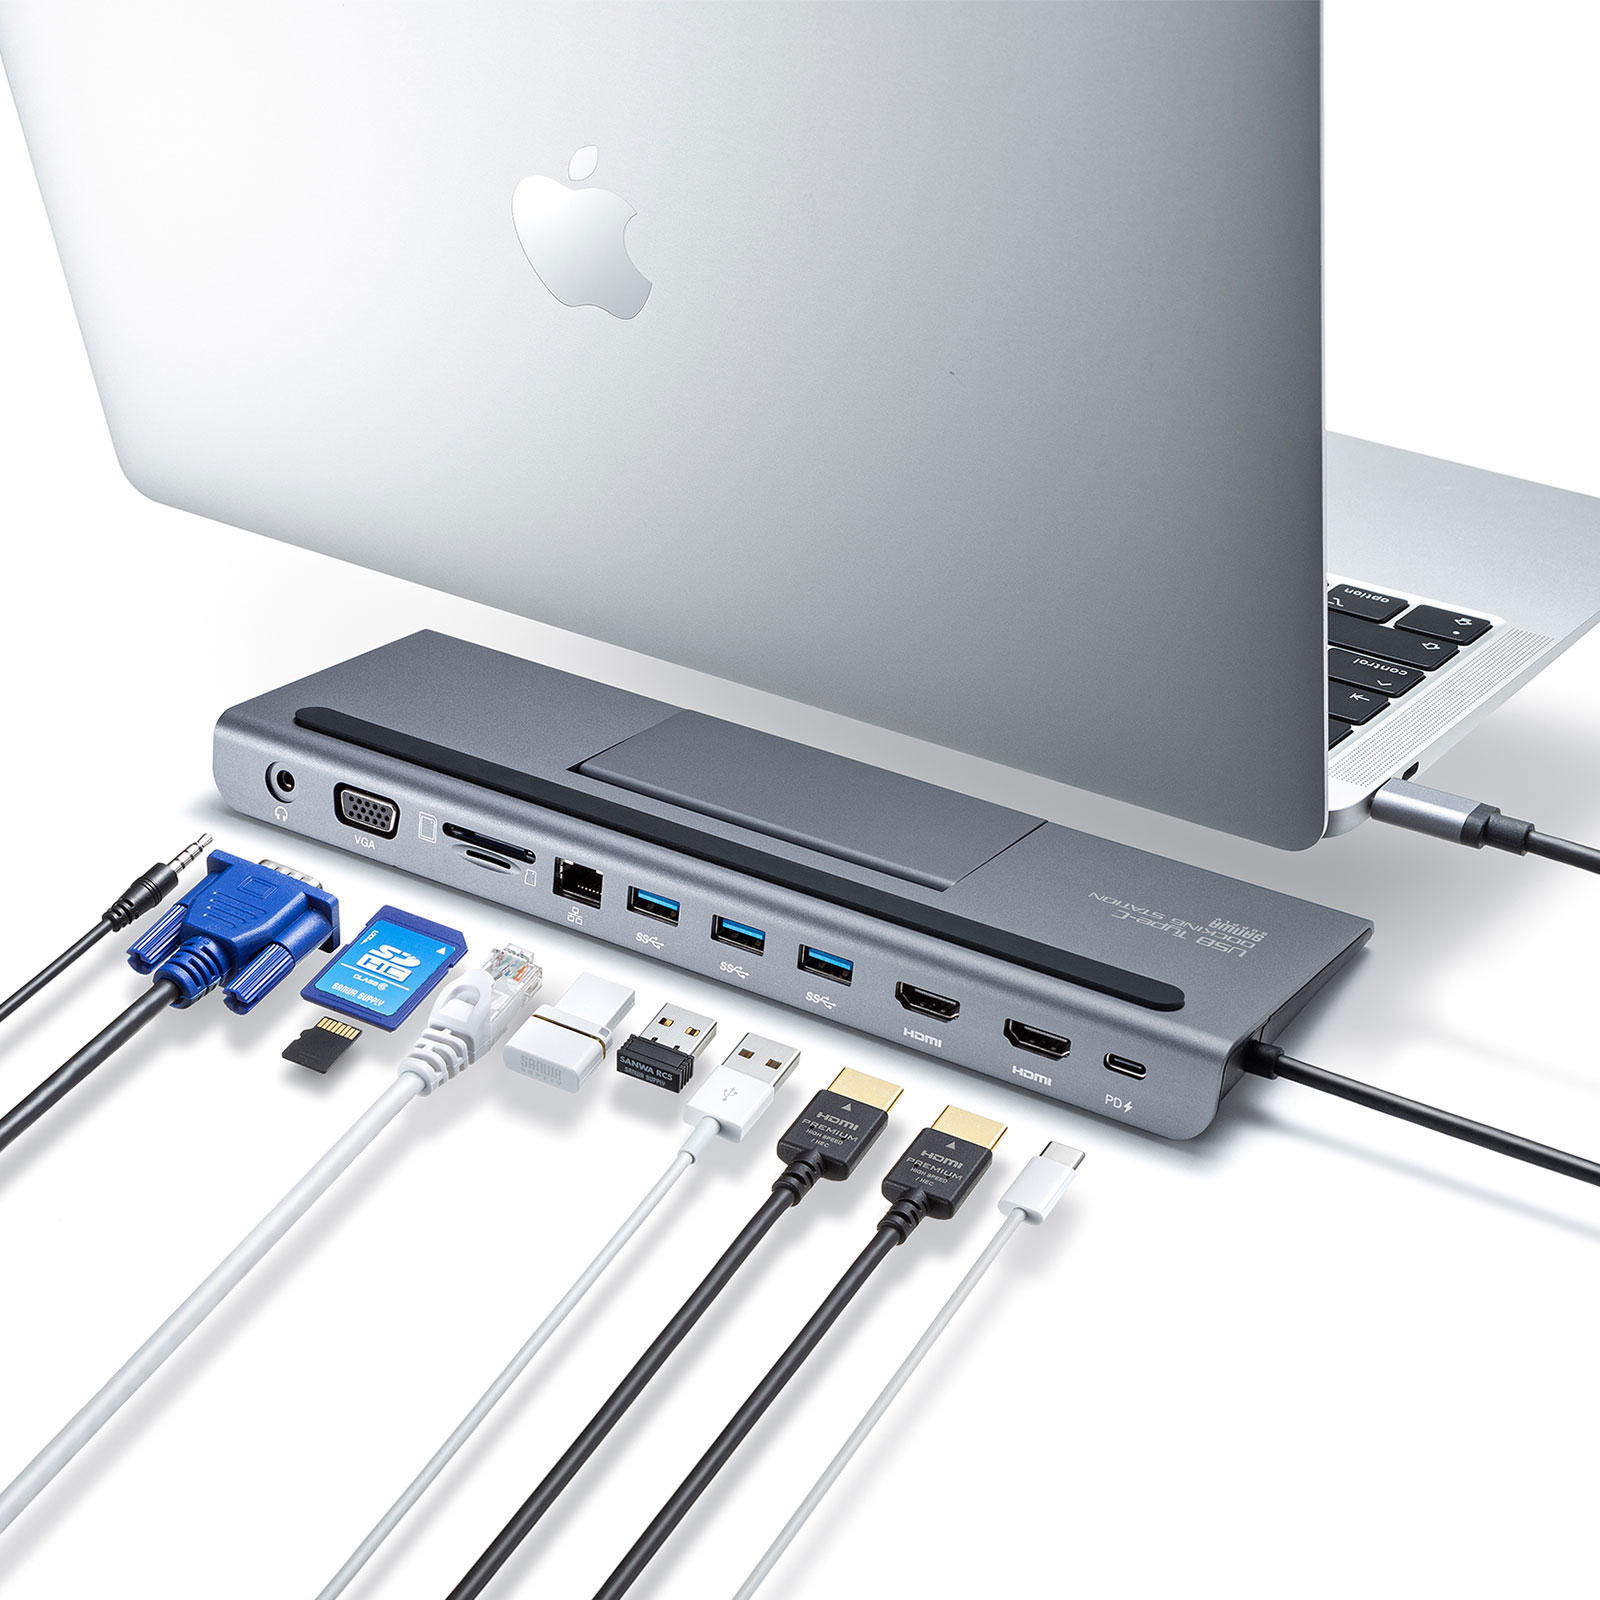 USB Type-Cケーブル1本で様々な機器を一括で接続できるHDMI/VGA対応の